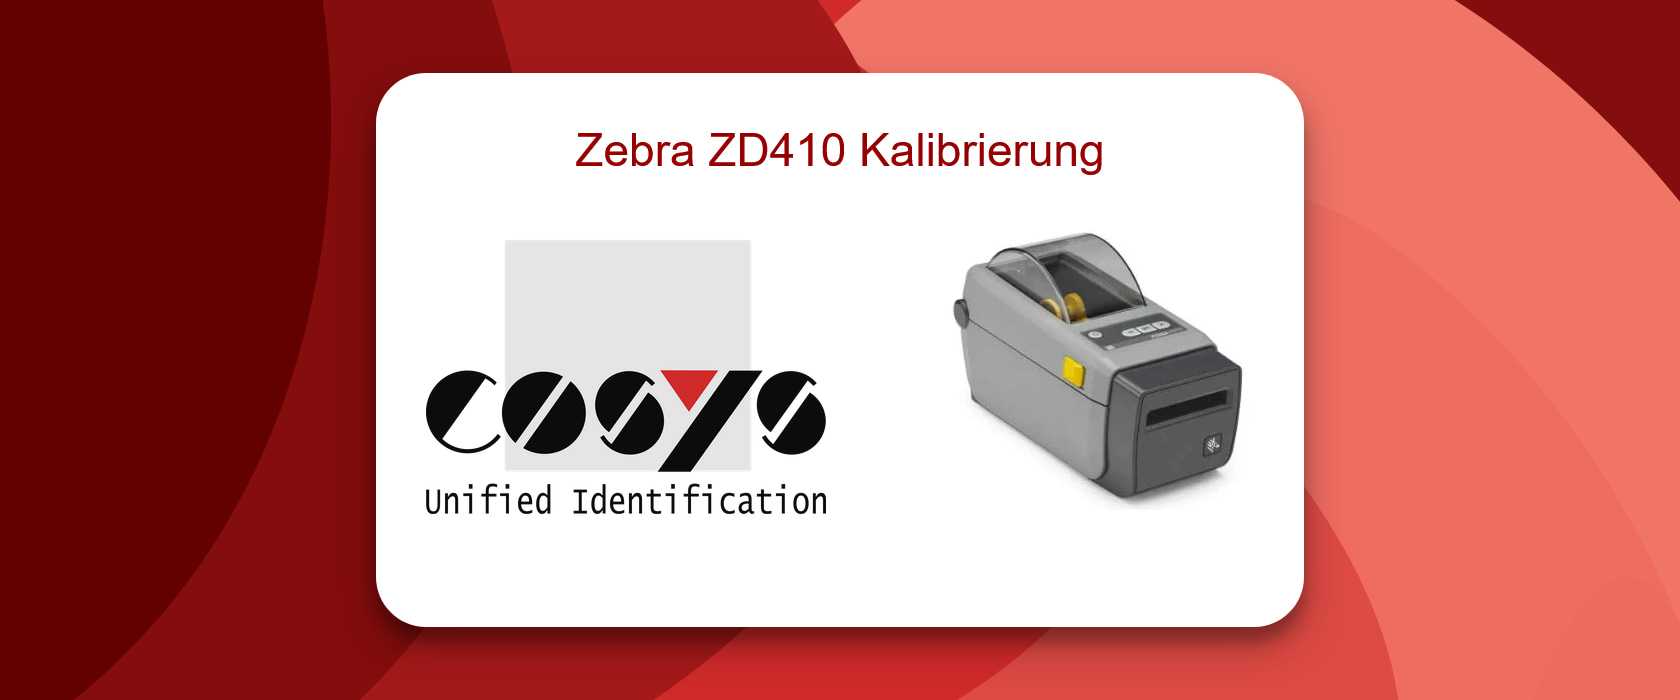 Kalibrierung des Zebra ZD410 Druckers